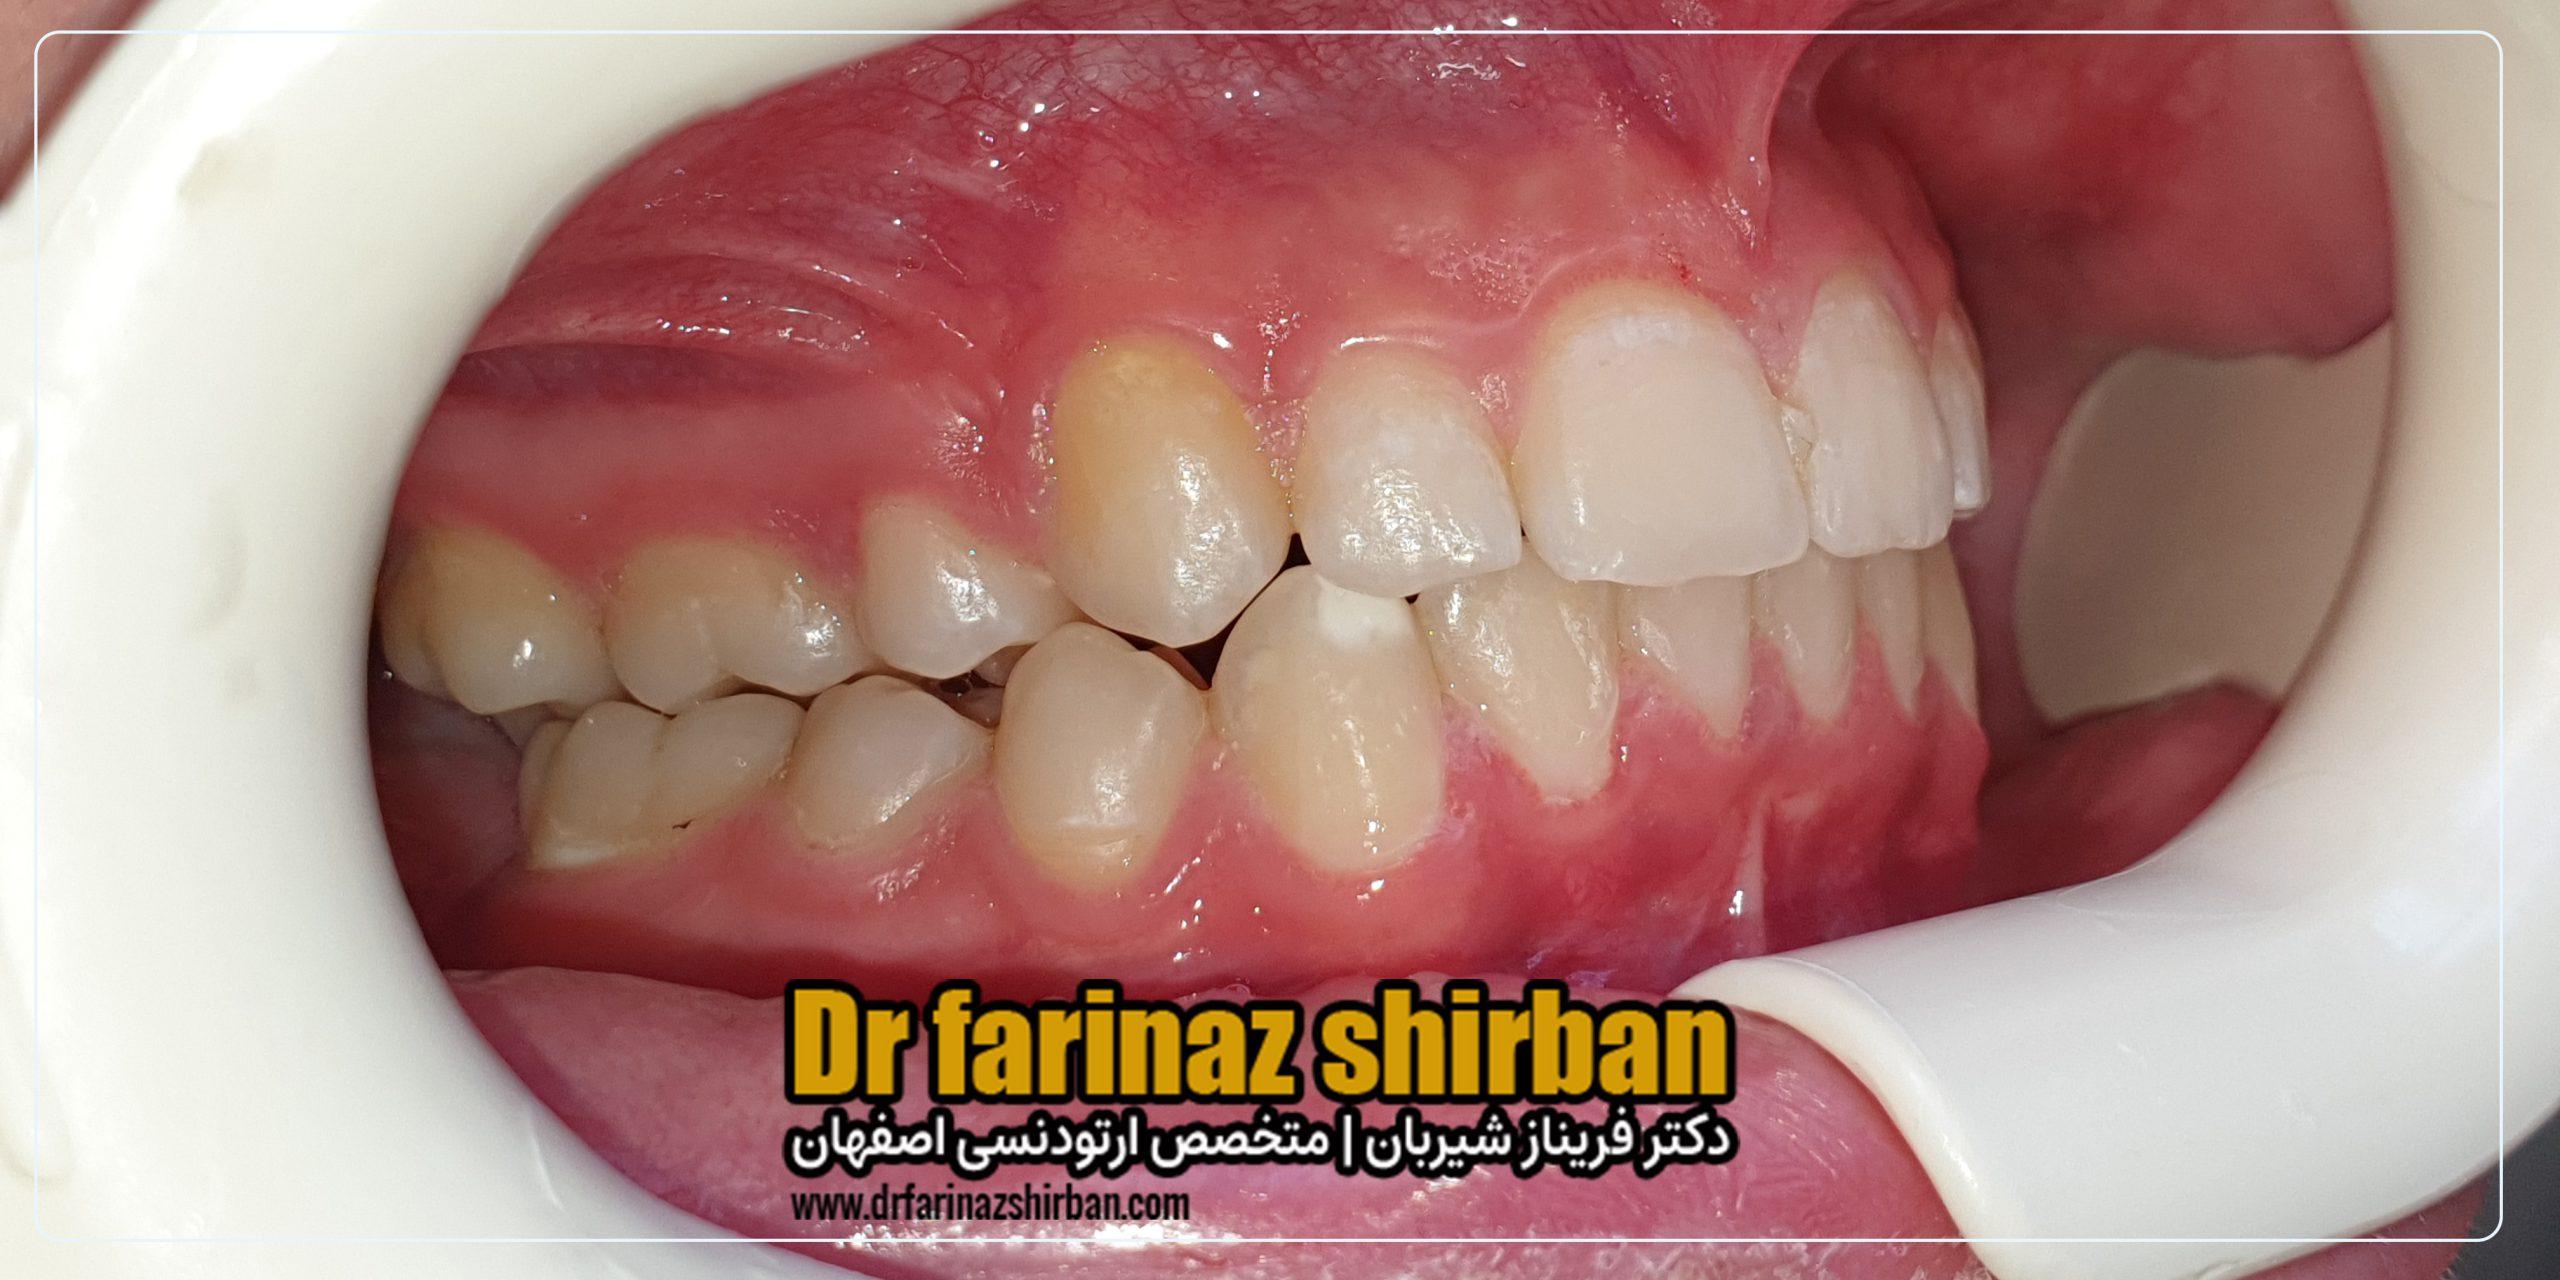 نمونه درمان اصلاح تنگی قوس فک و نامنظمی دندان ها بدون جراحی و کشیدن دندان توسط دکتر فریناز شیربان متخصص ارتودنسی در اصفهان